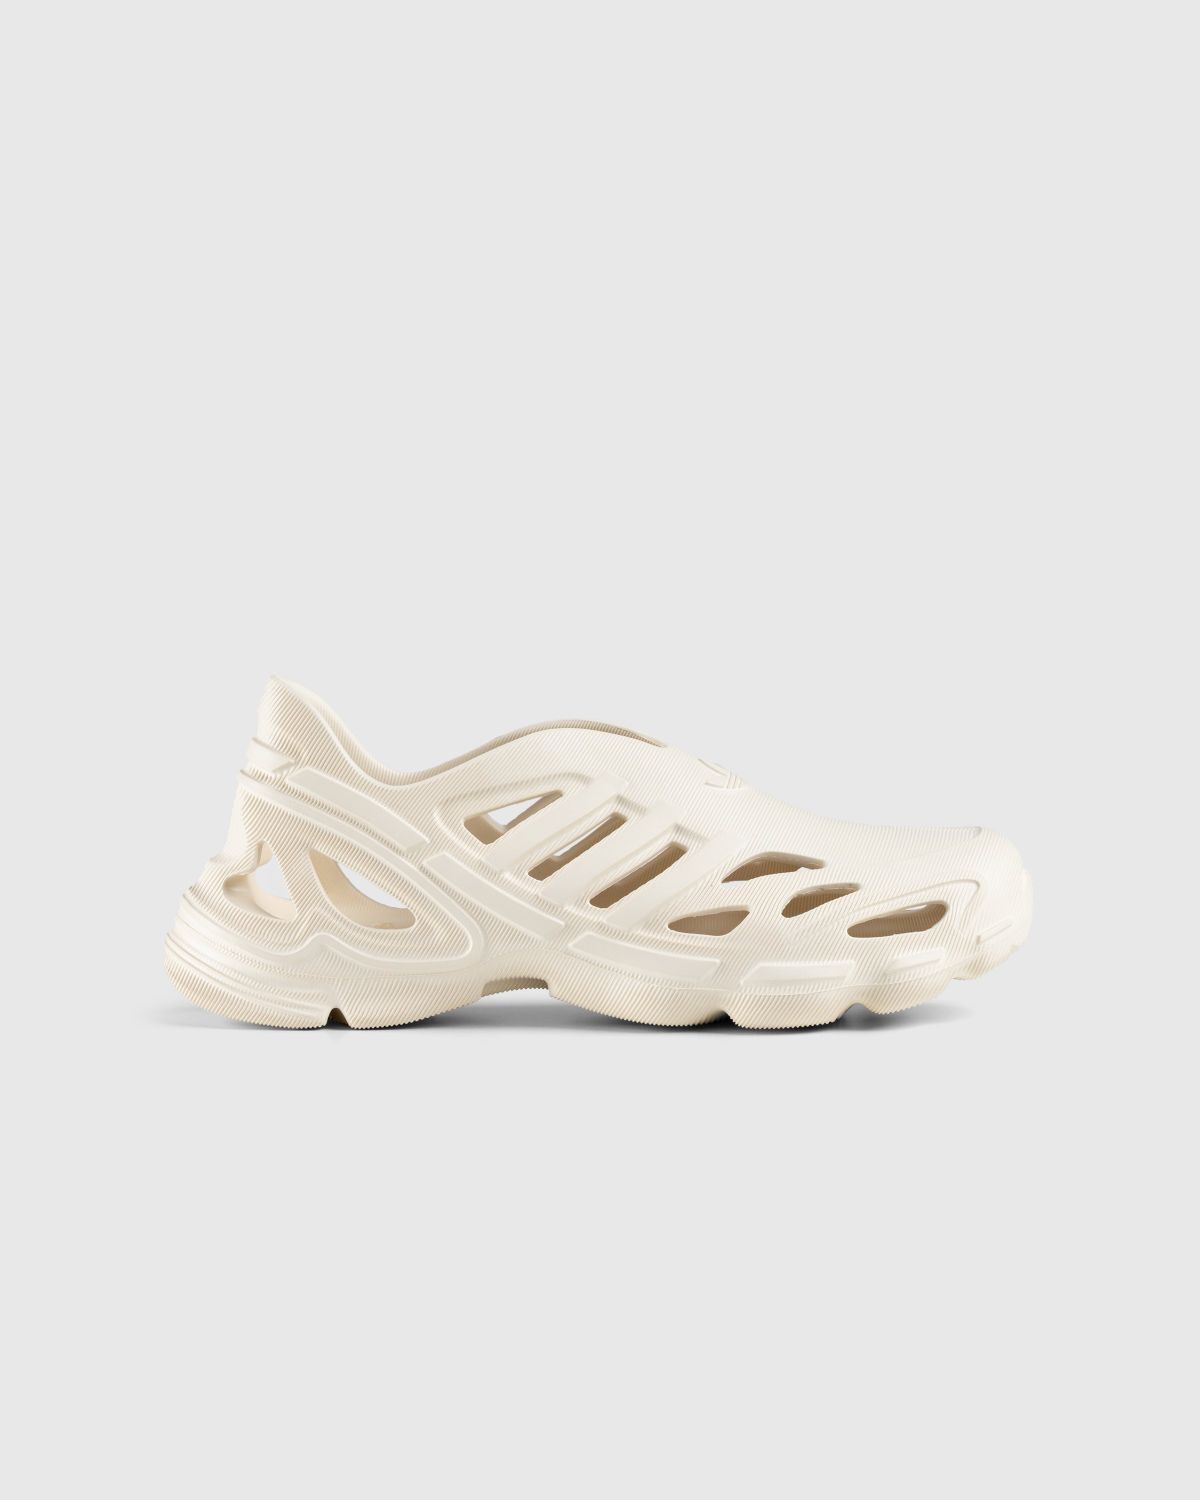 Adidas – Adifom Supernova Wonder White | Highsnobiety Shop